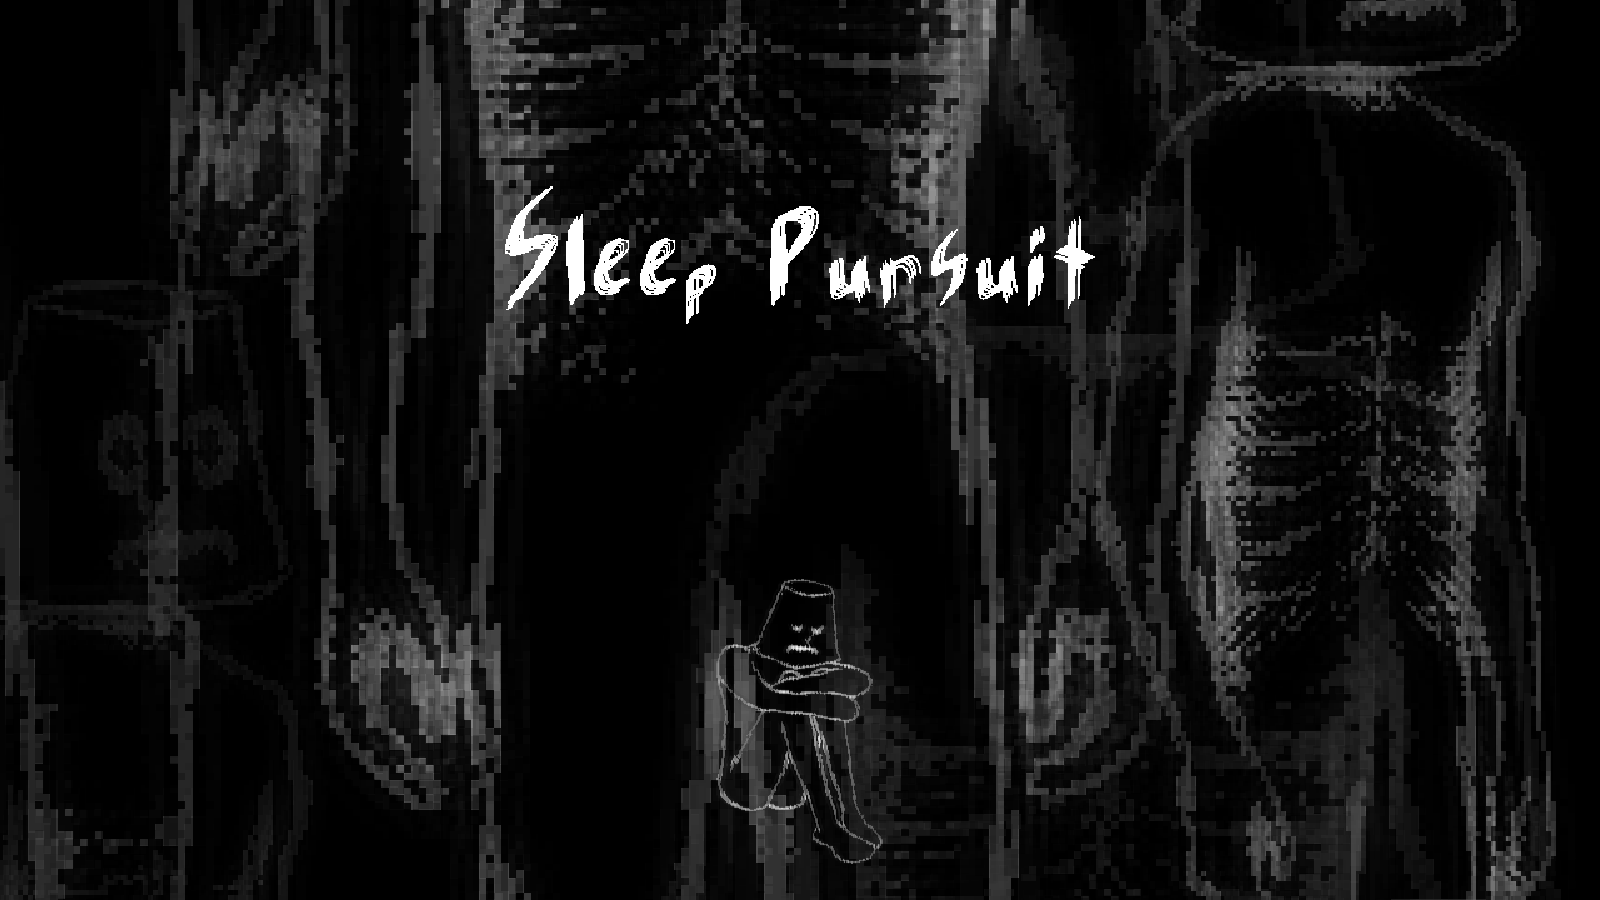 Sleep Pursuit